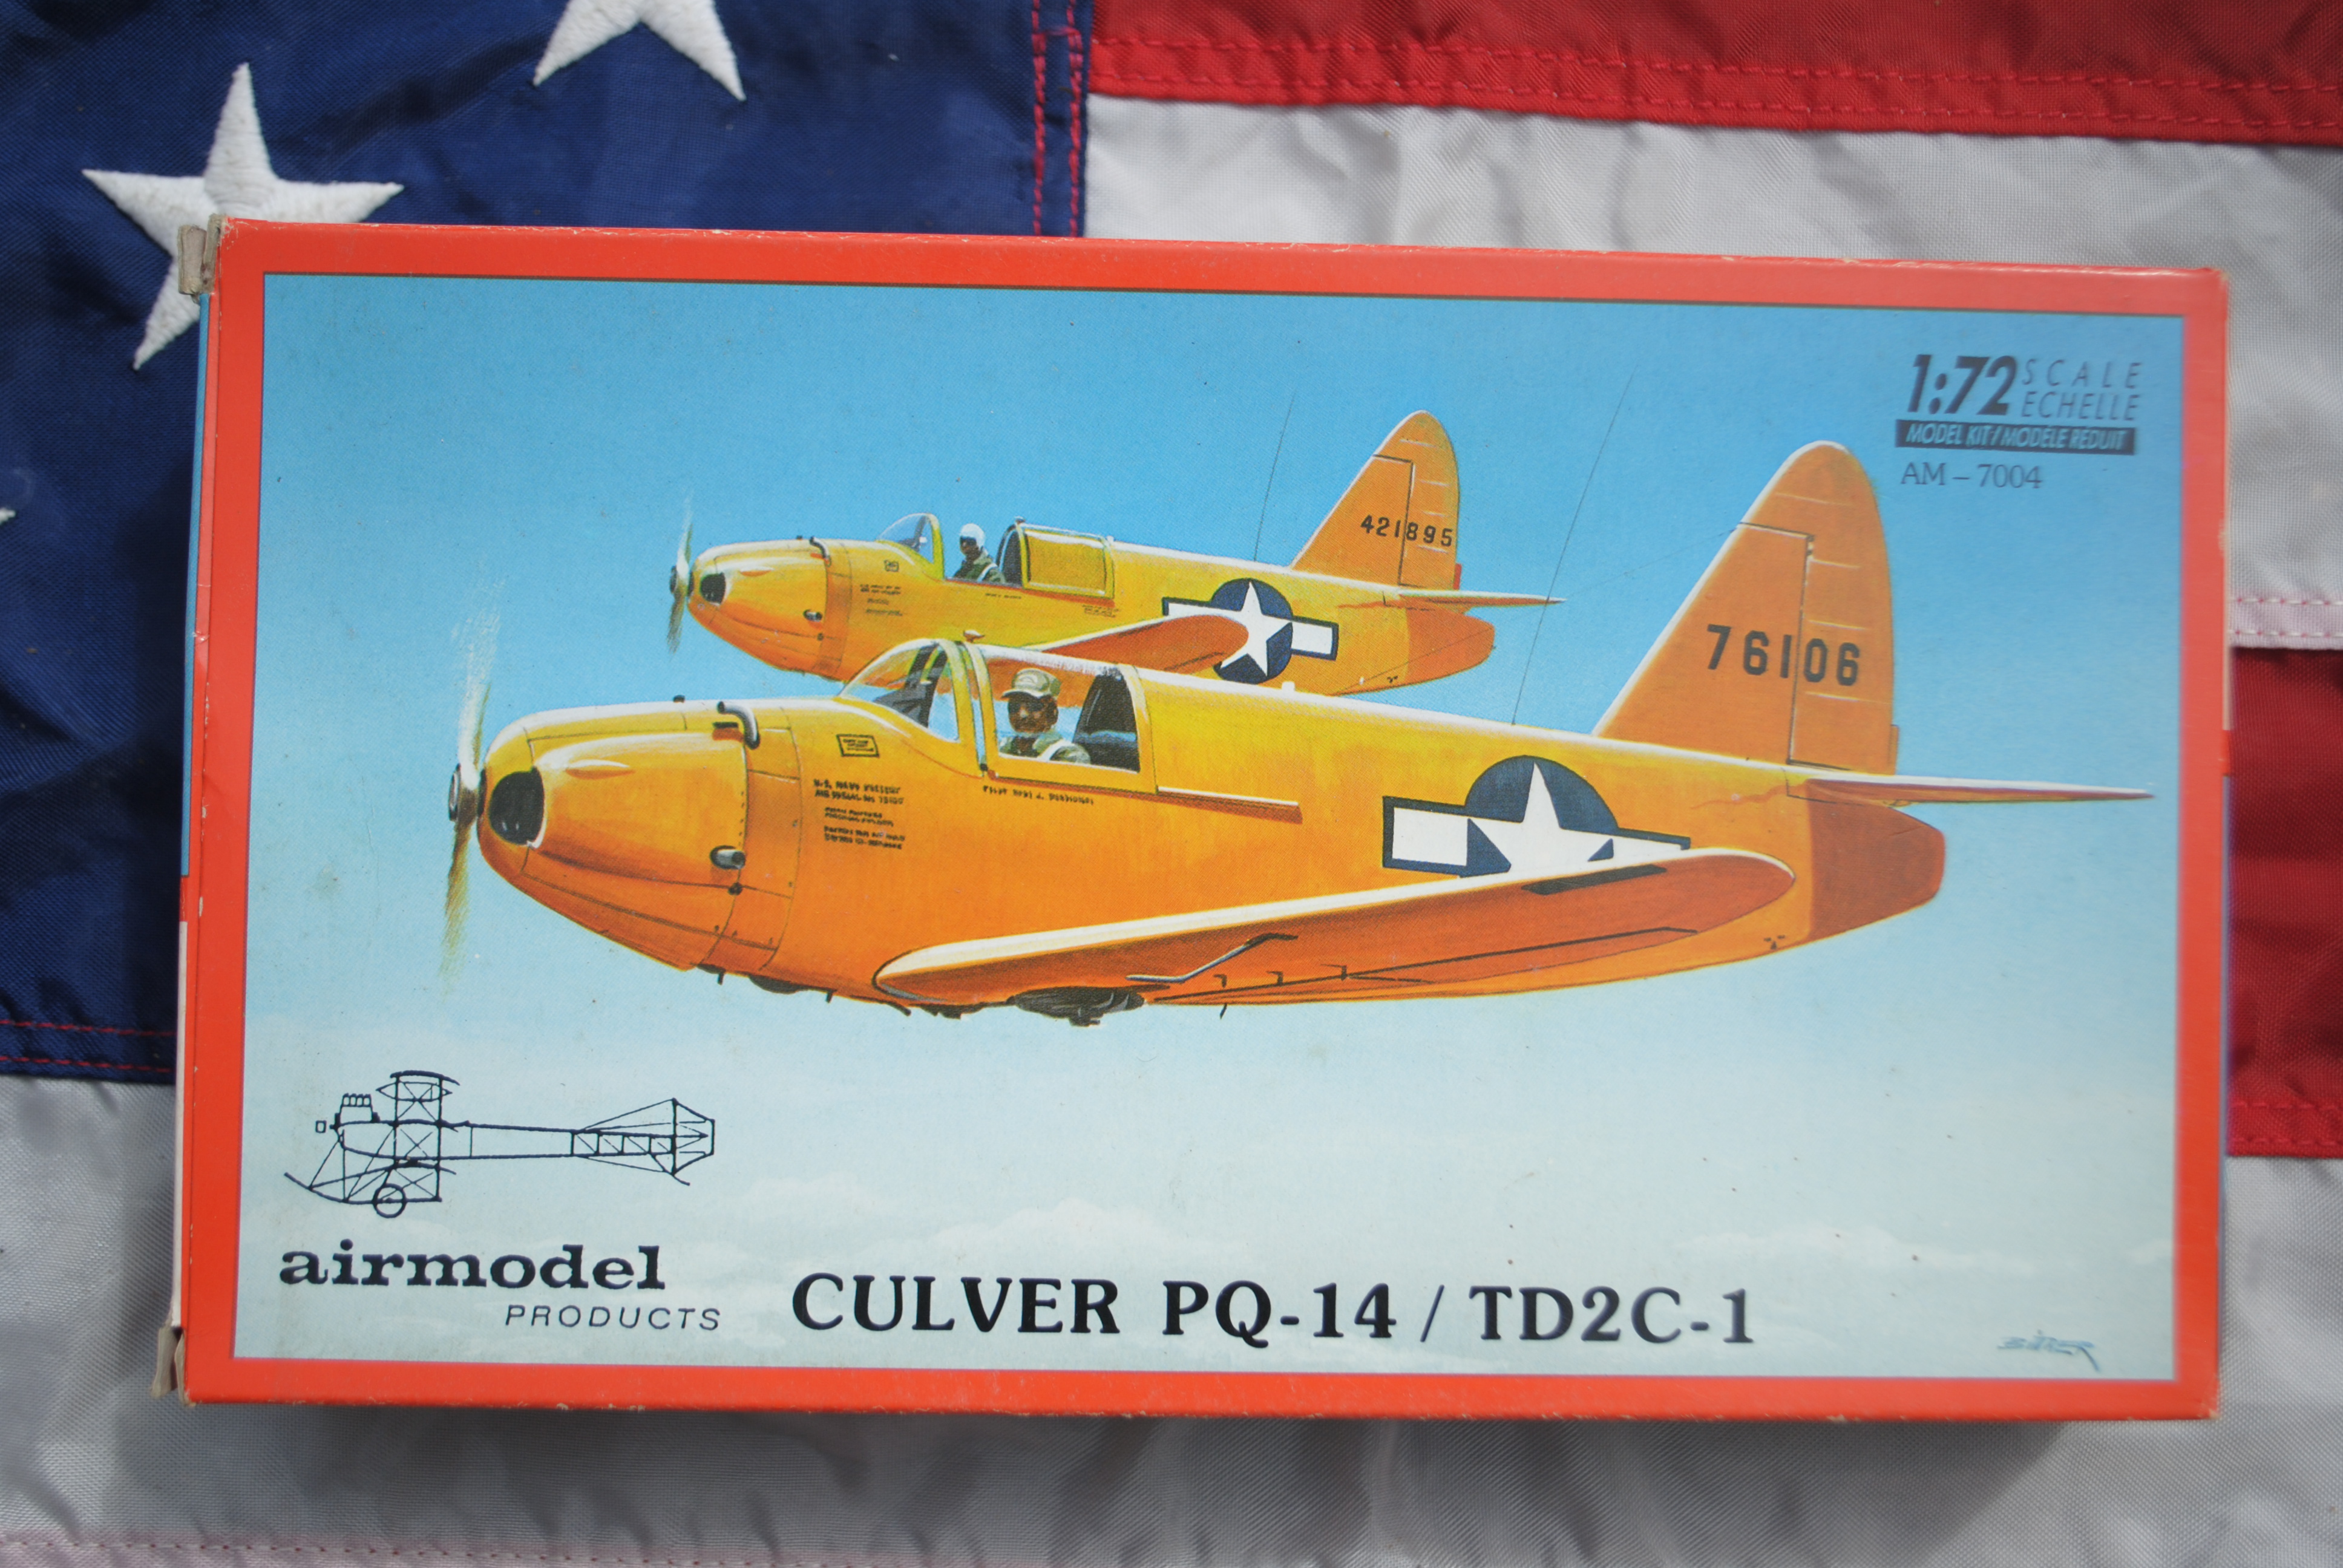 Airmodel products AM-7004 Culver PQ-14 / TD2C-1